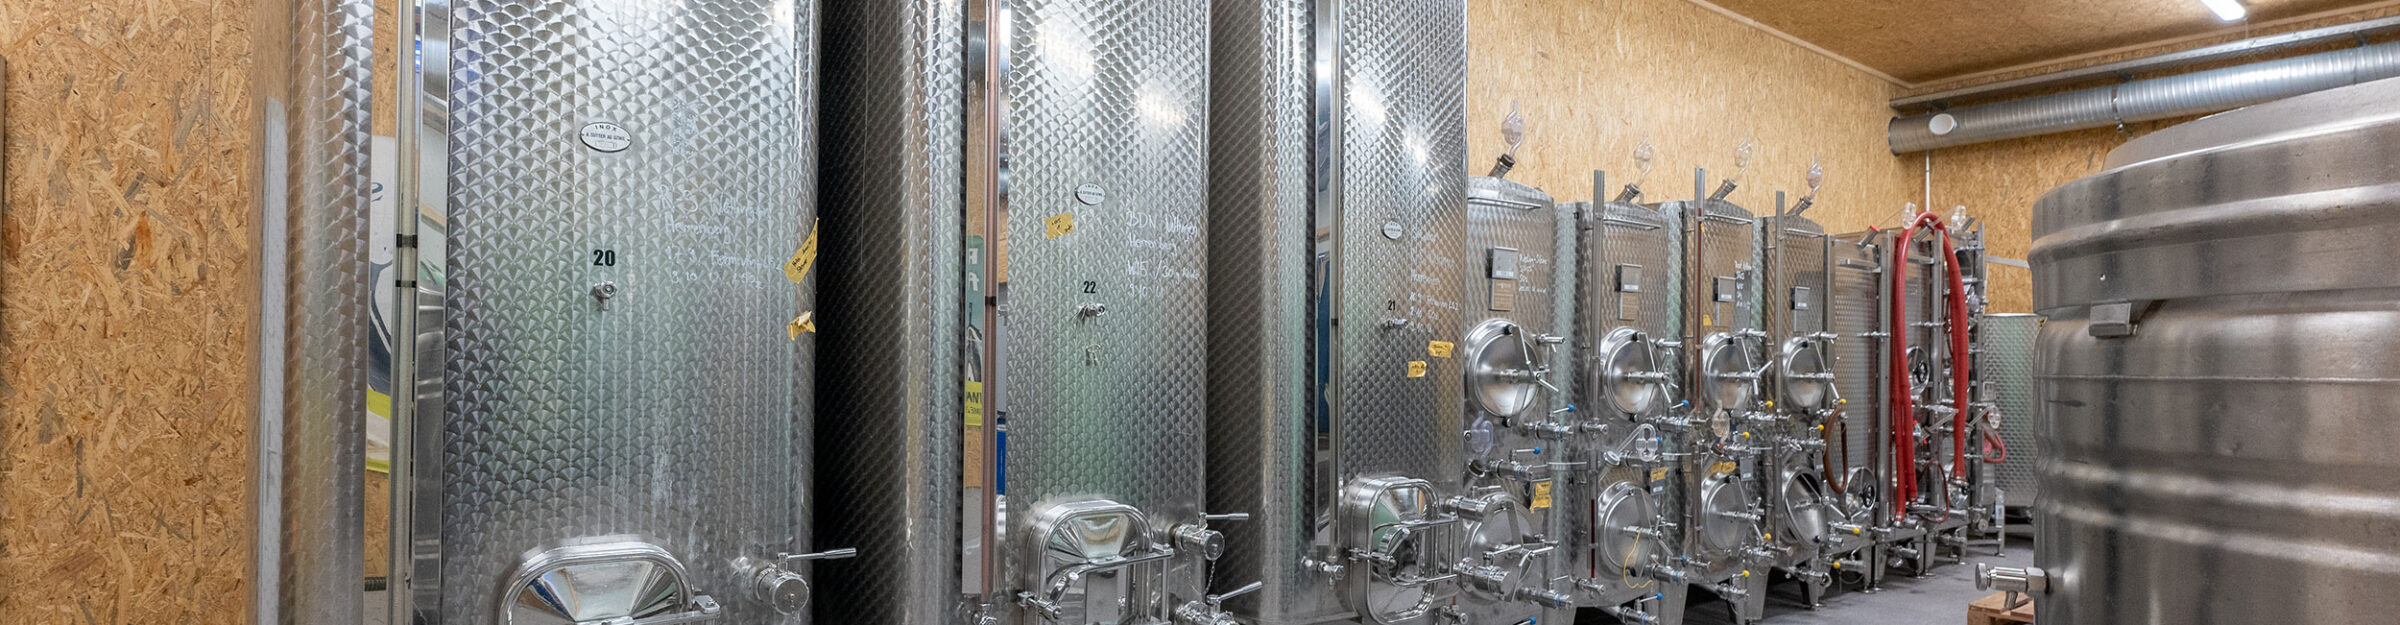 Weinproduktionshalle, Steimer Weinbau, Wettingen AG